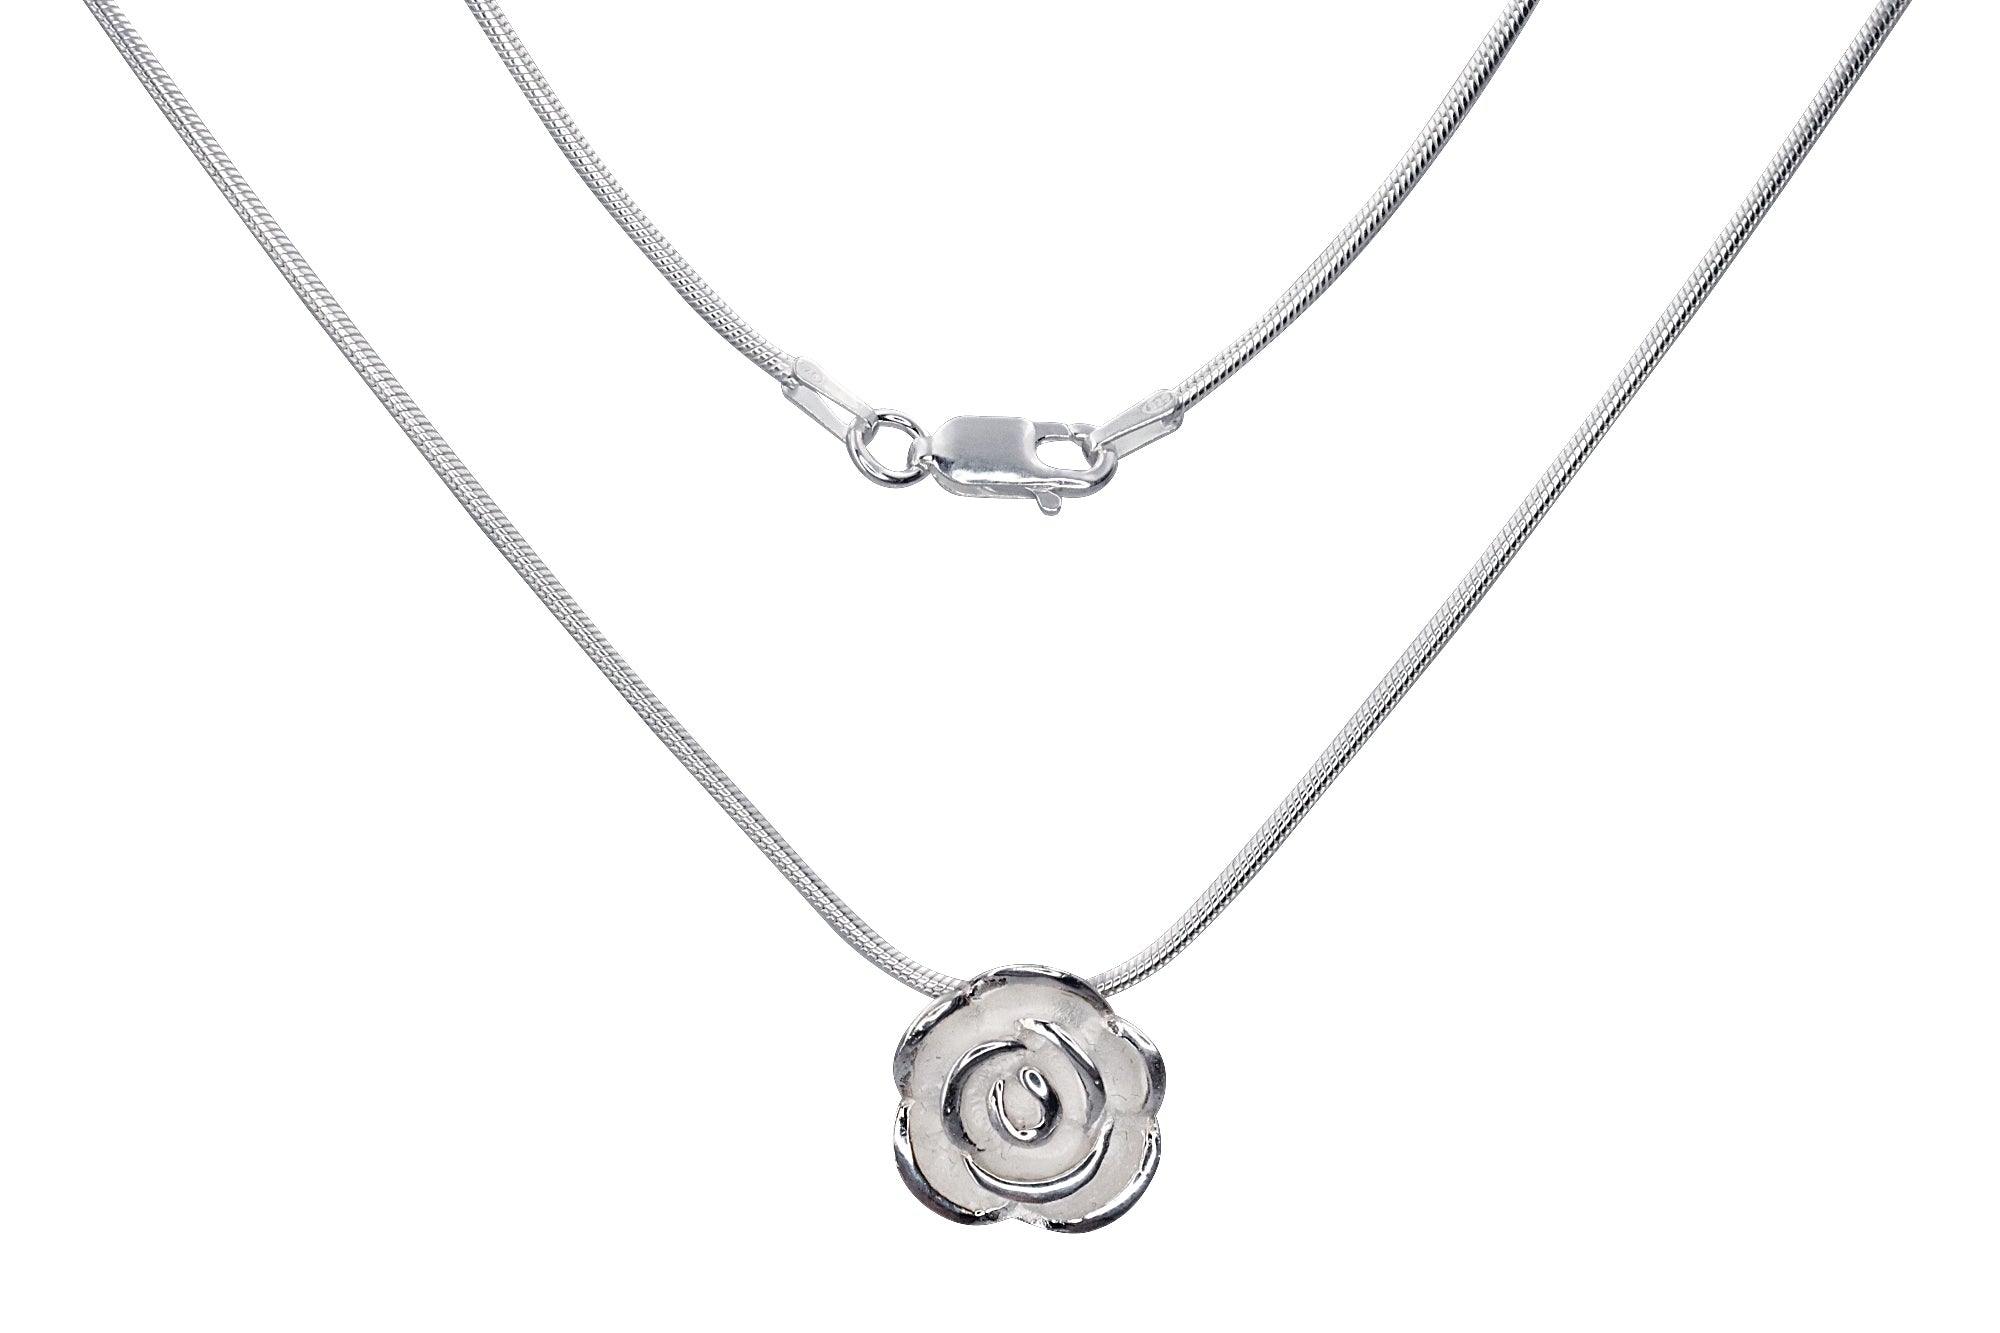 Eine Rose als Anhänger für Damen aus Silber mit sandgestrahlter Oberfläche und versenkten Ösen zum verdeckten Fädeln einer Kette.